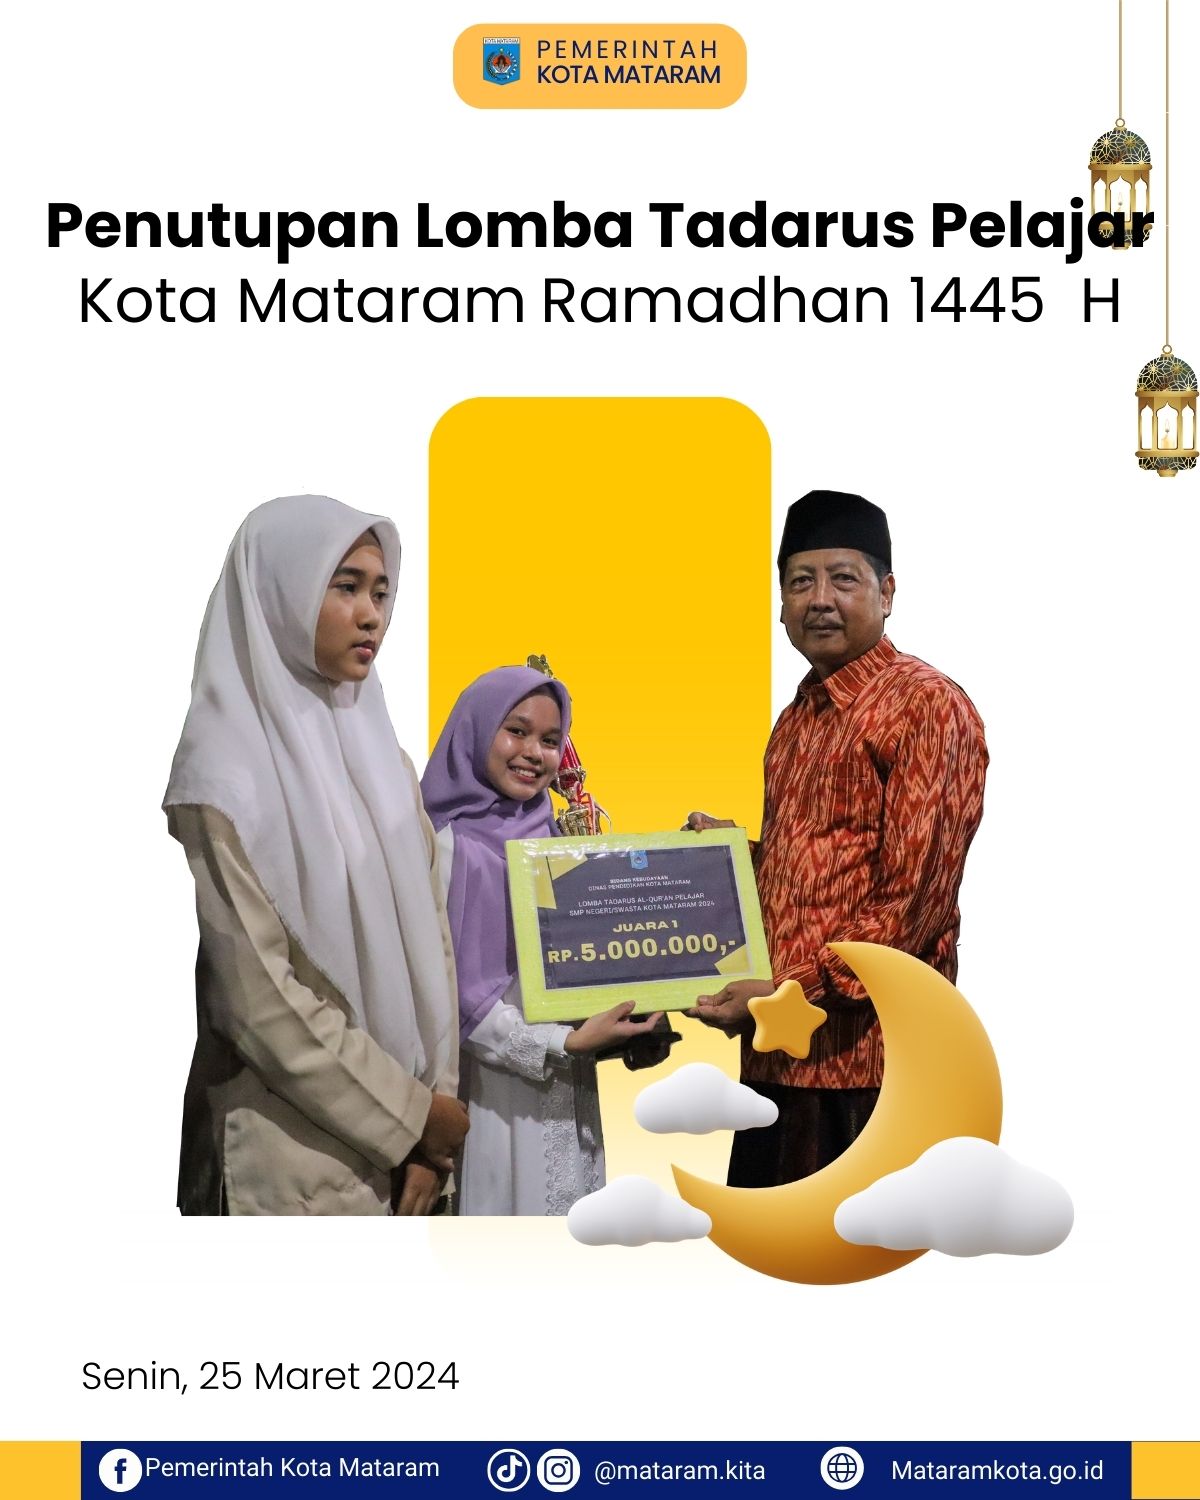 Penutupan Lomba Tadarus Pelajar Kota Mataram Ramadhan 1445 H